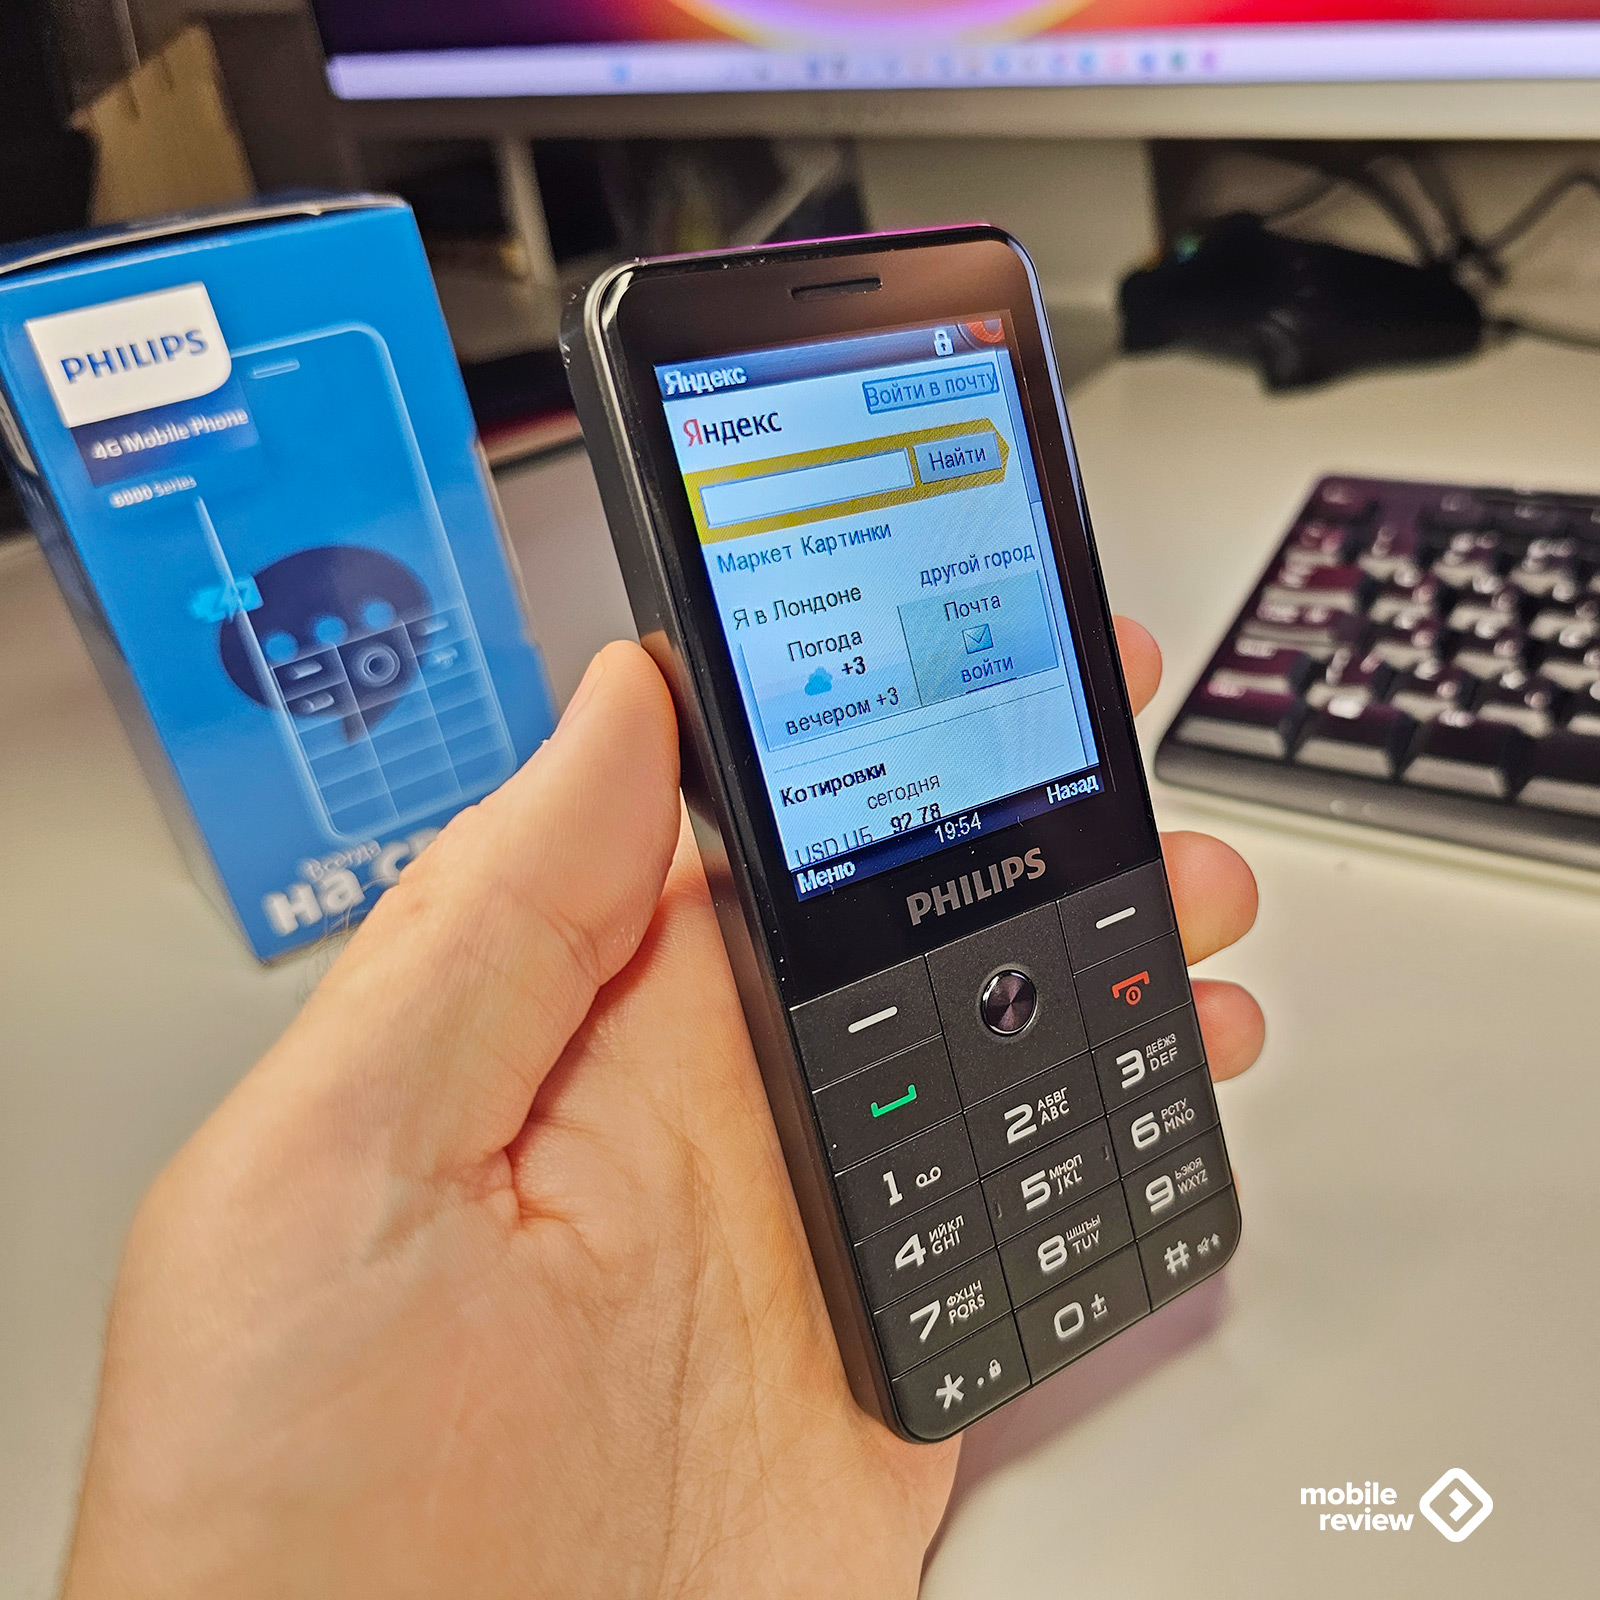 Philips Xenium E6808: 5 причин купить кнопочный телефон — Mobile-review.com  — Все о мобильной технике и технологиях